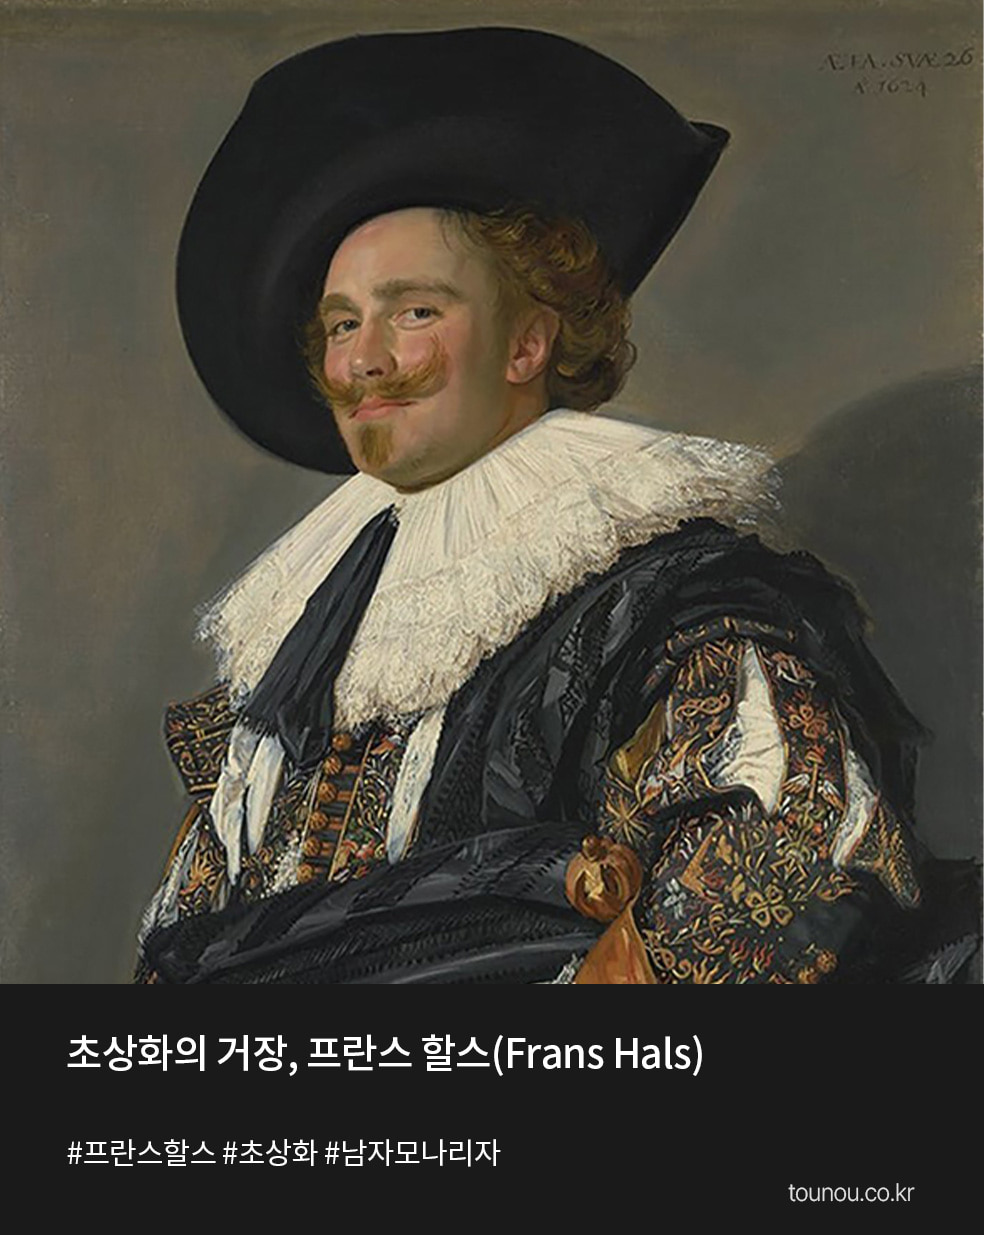 예술이 있는 하루 초상화의 거장, 프란스 할스(Frans Hals)